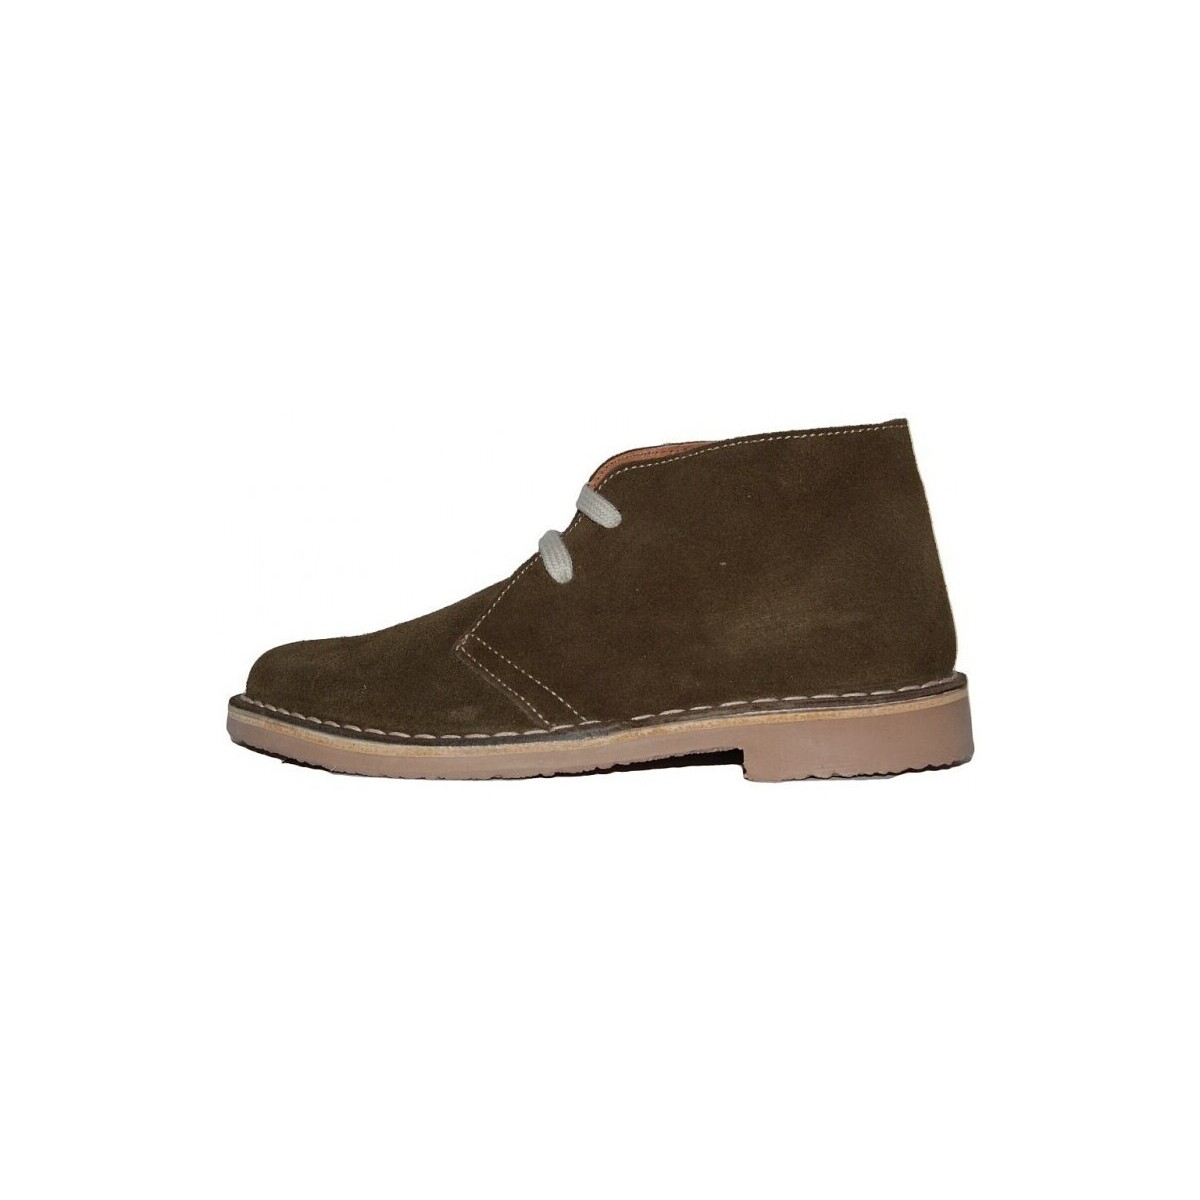 Schoenen Laarzen Colores 20705-24 Brown